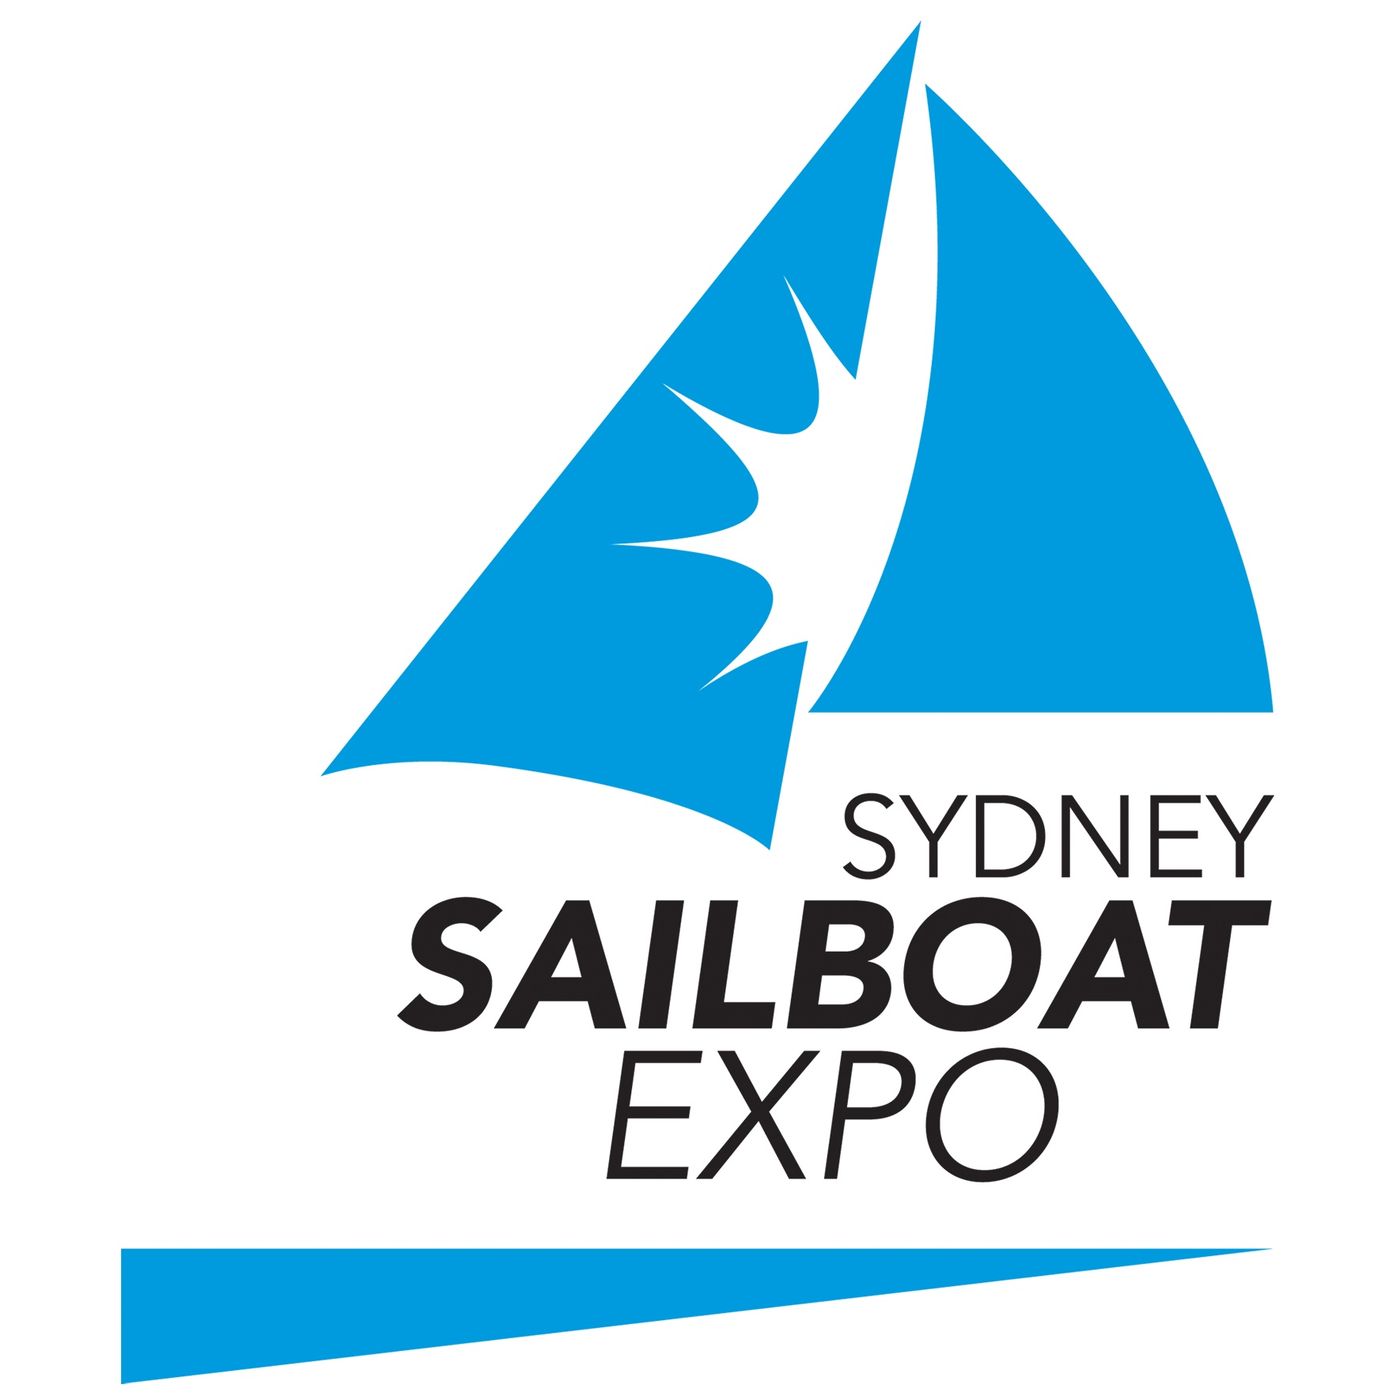 Sydney Sailboat Expo 2015